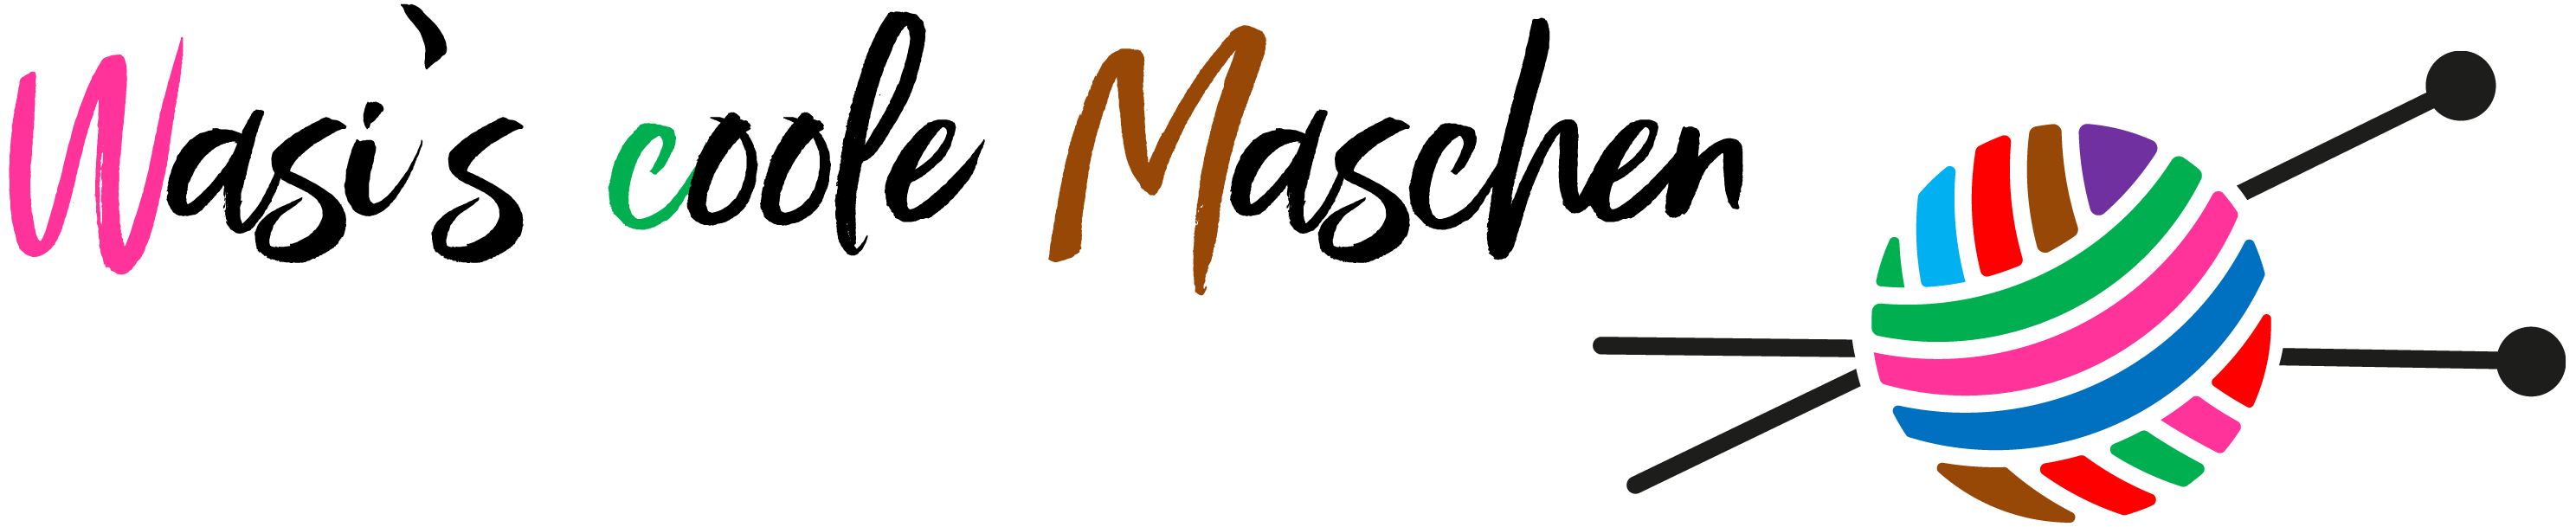 Wasi's coole Maschen